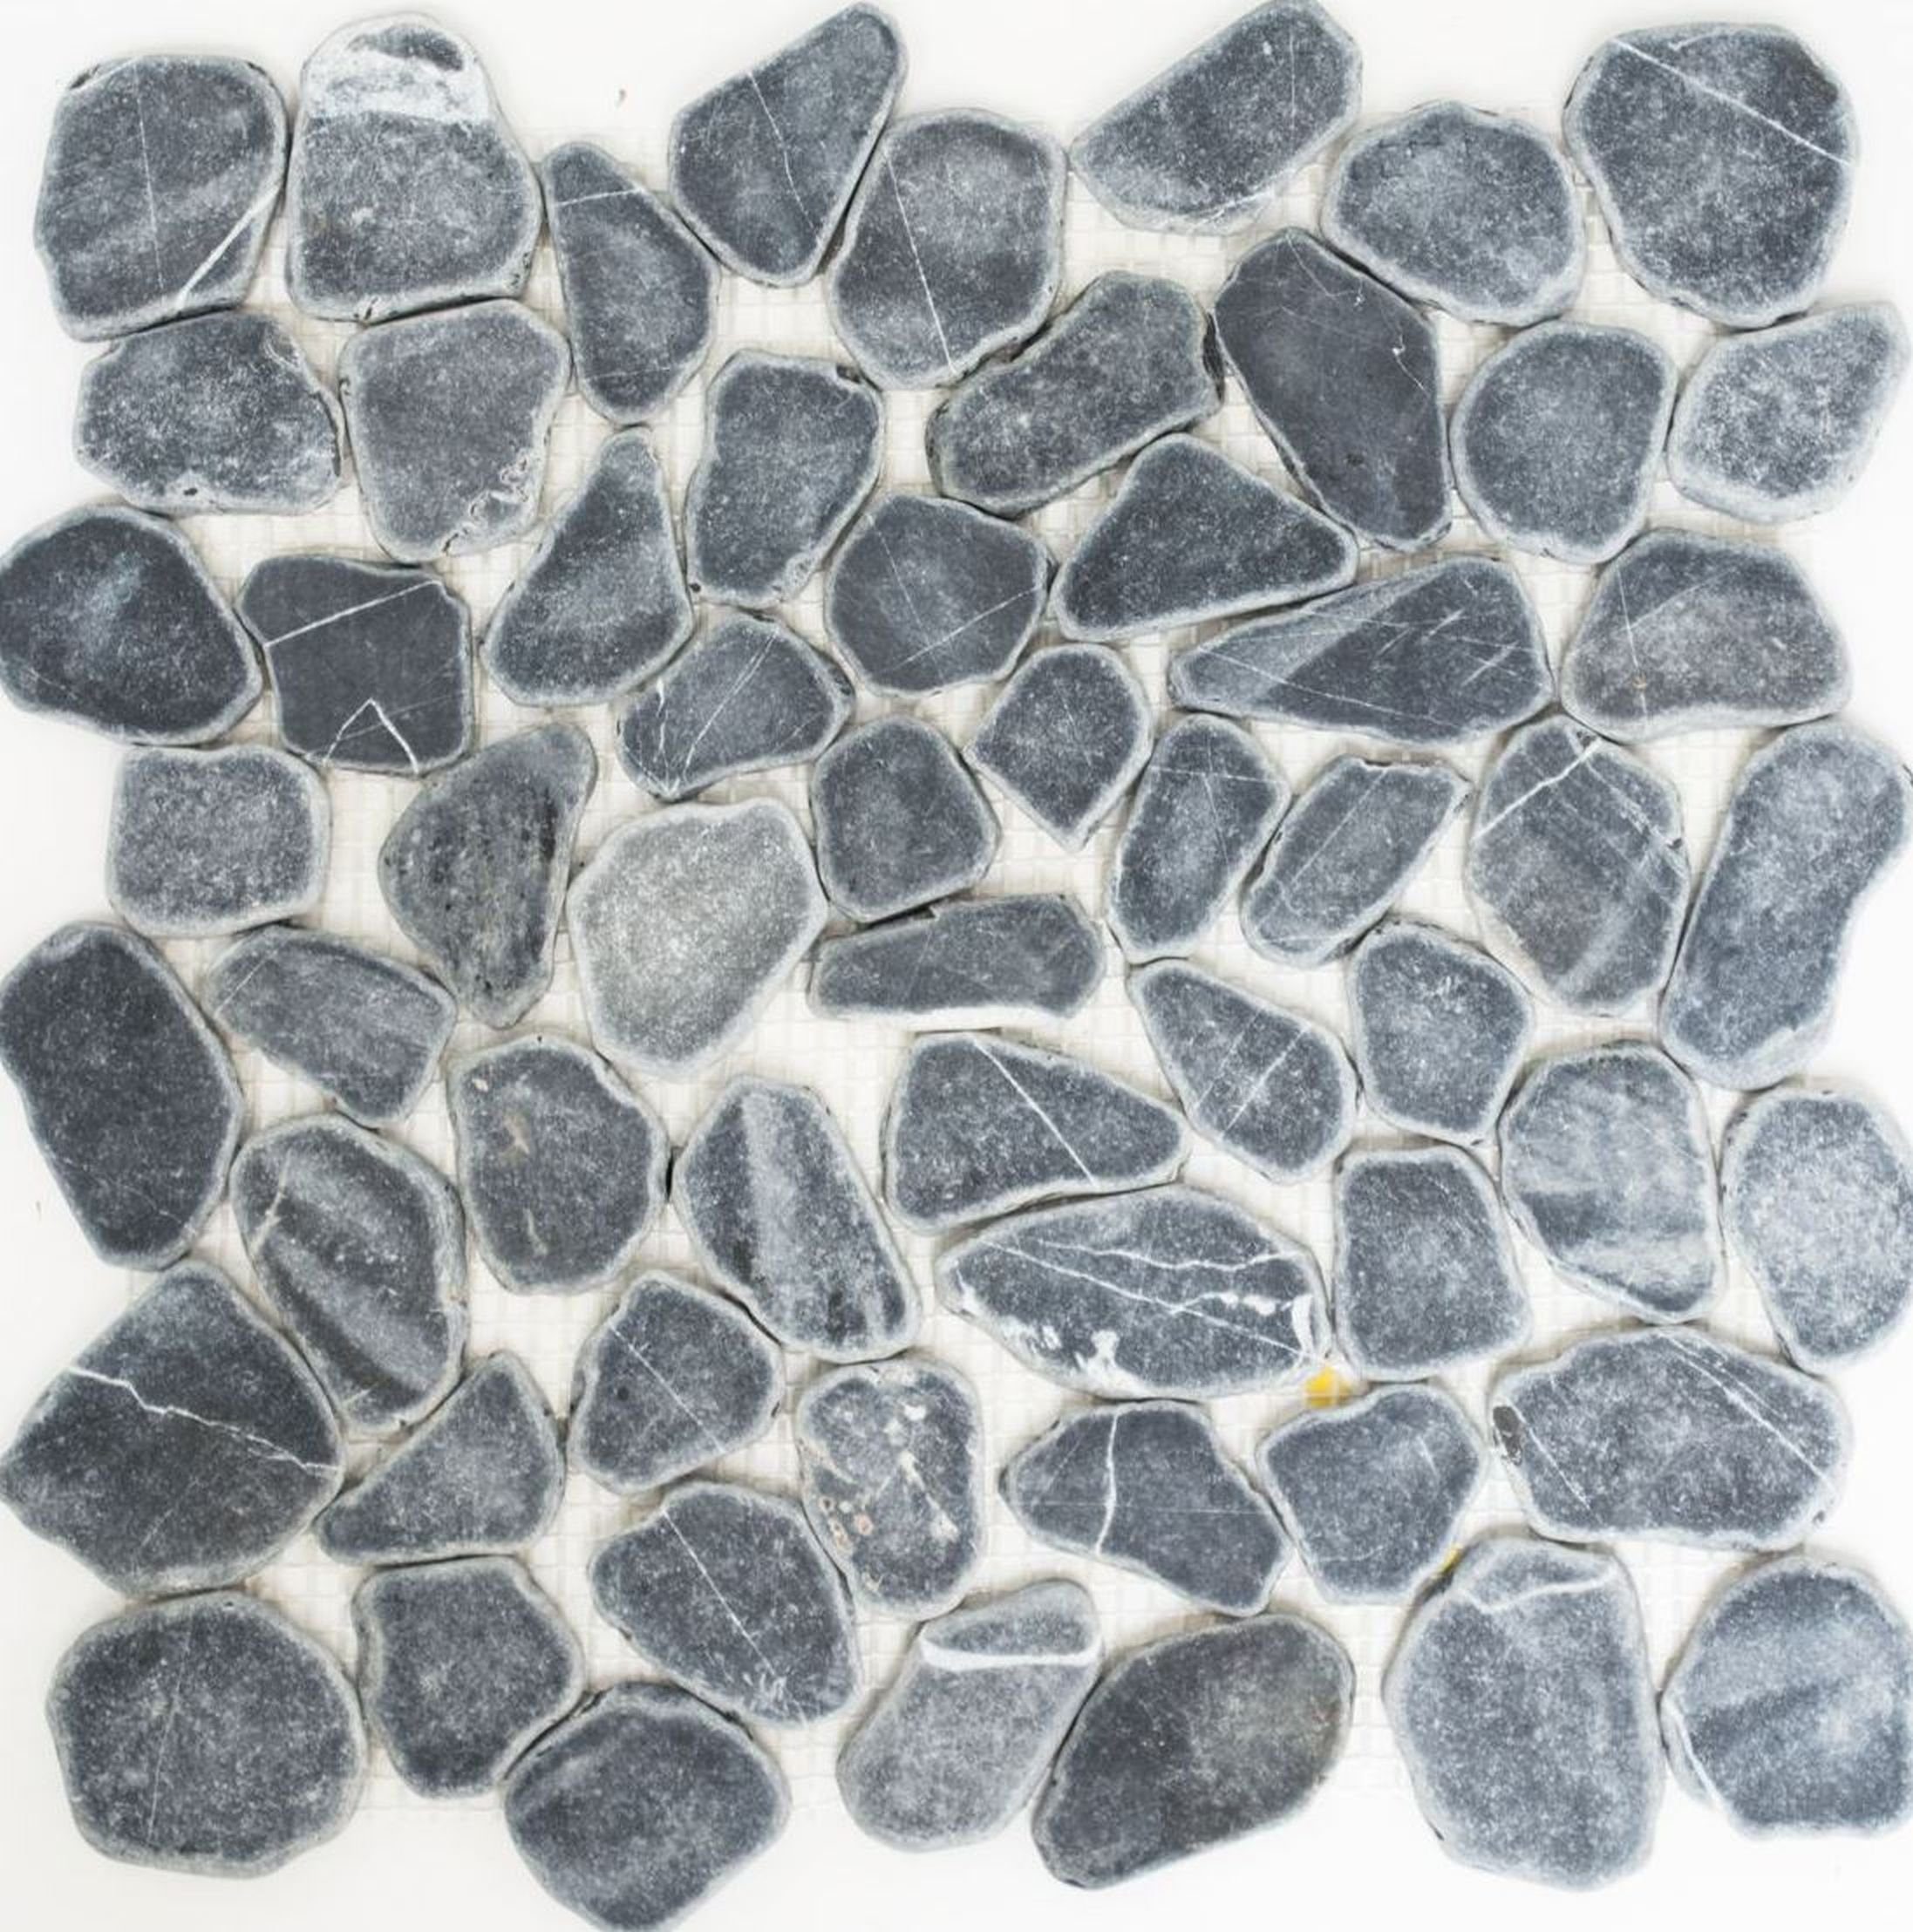 Mosani Mosaikfliesen Flußkiesel geschnitten schwarz anthrazir grau Duschtasse Duschwand